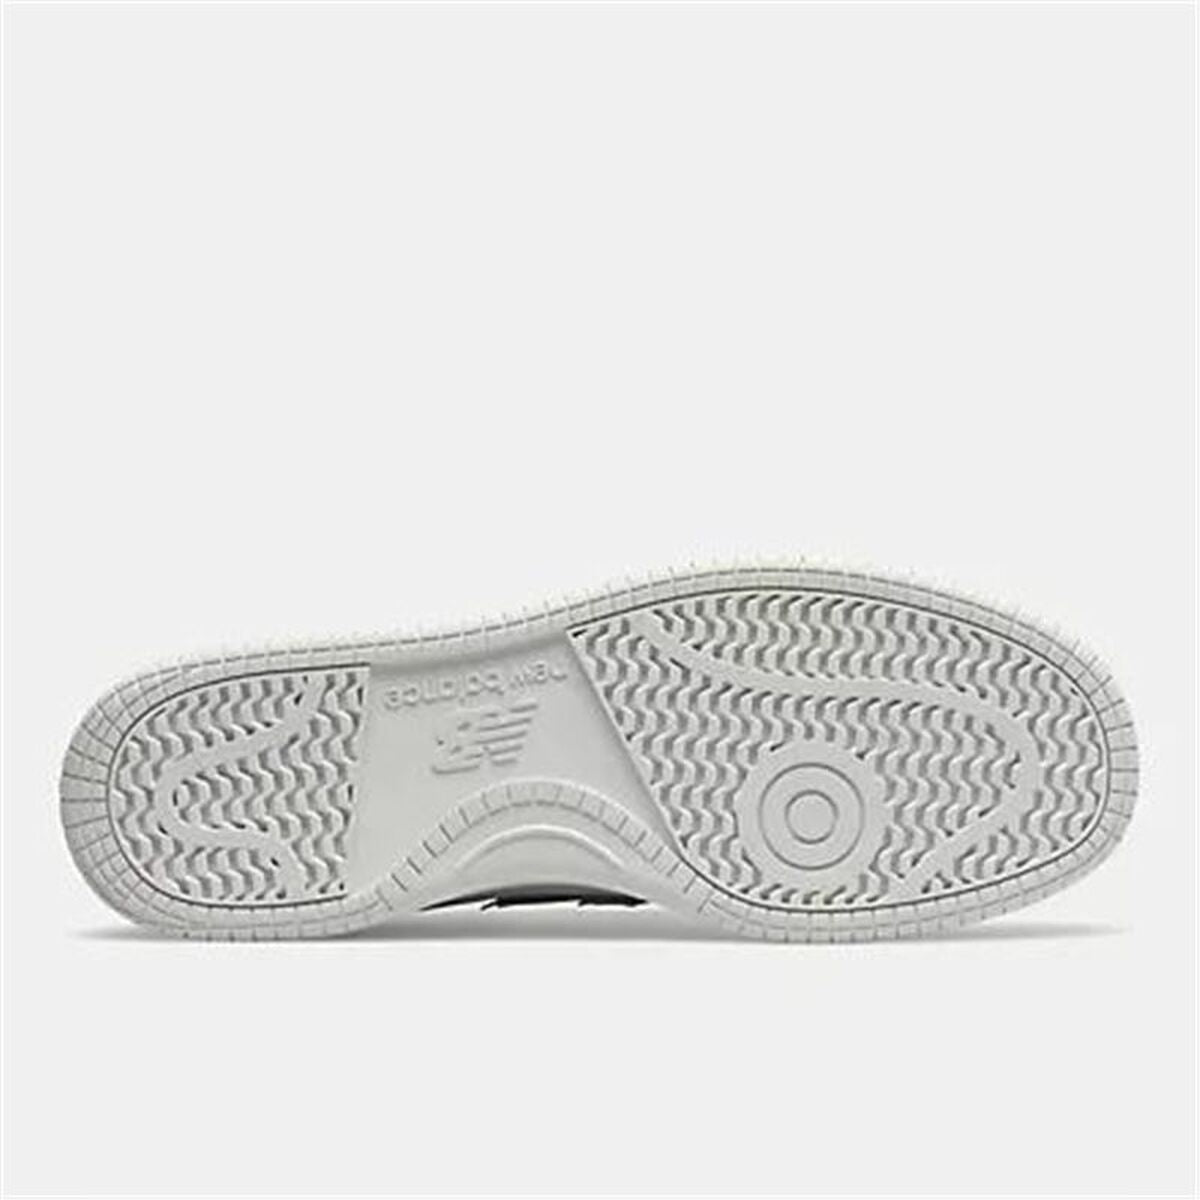 Kaufe Herren Sneaker New Balance 480 Weiß bei AWK Flagship um € 92.00